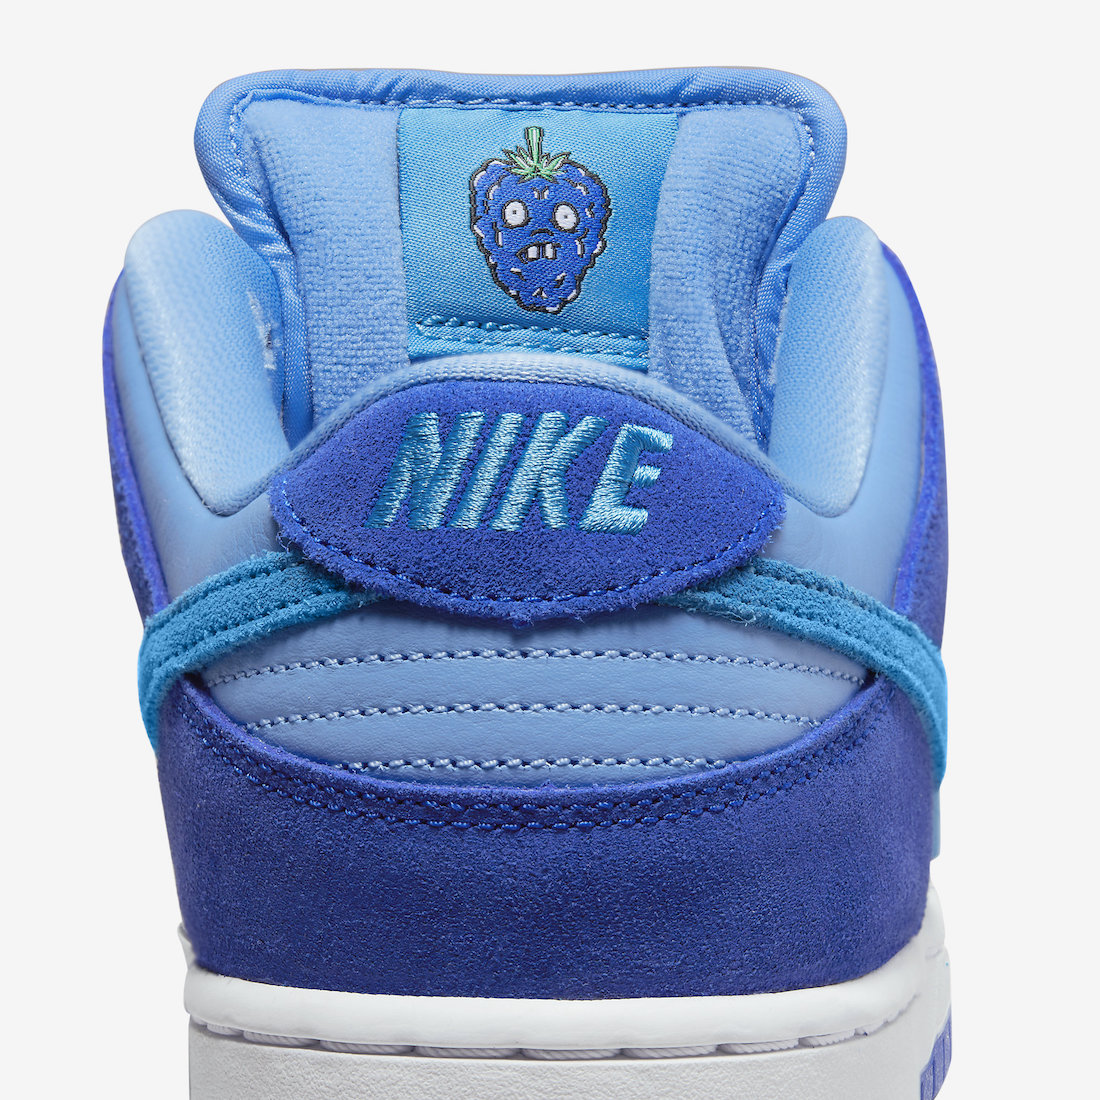 Nike SB Dunk Low Blue Raspberry DM0807-400 Release Date